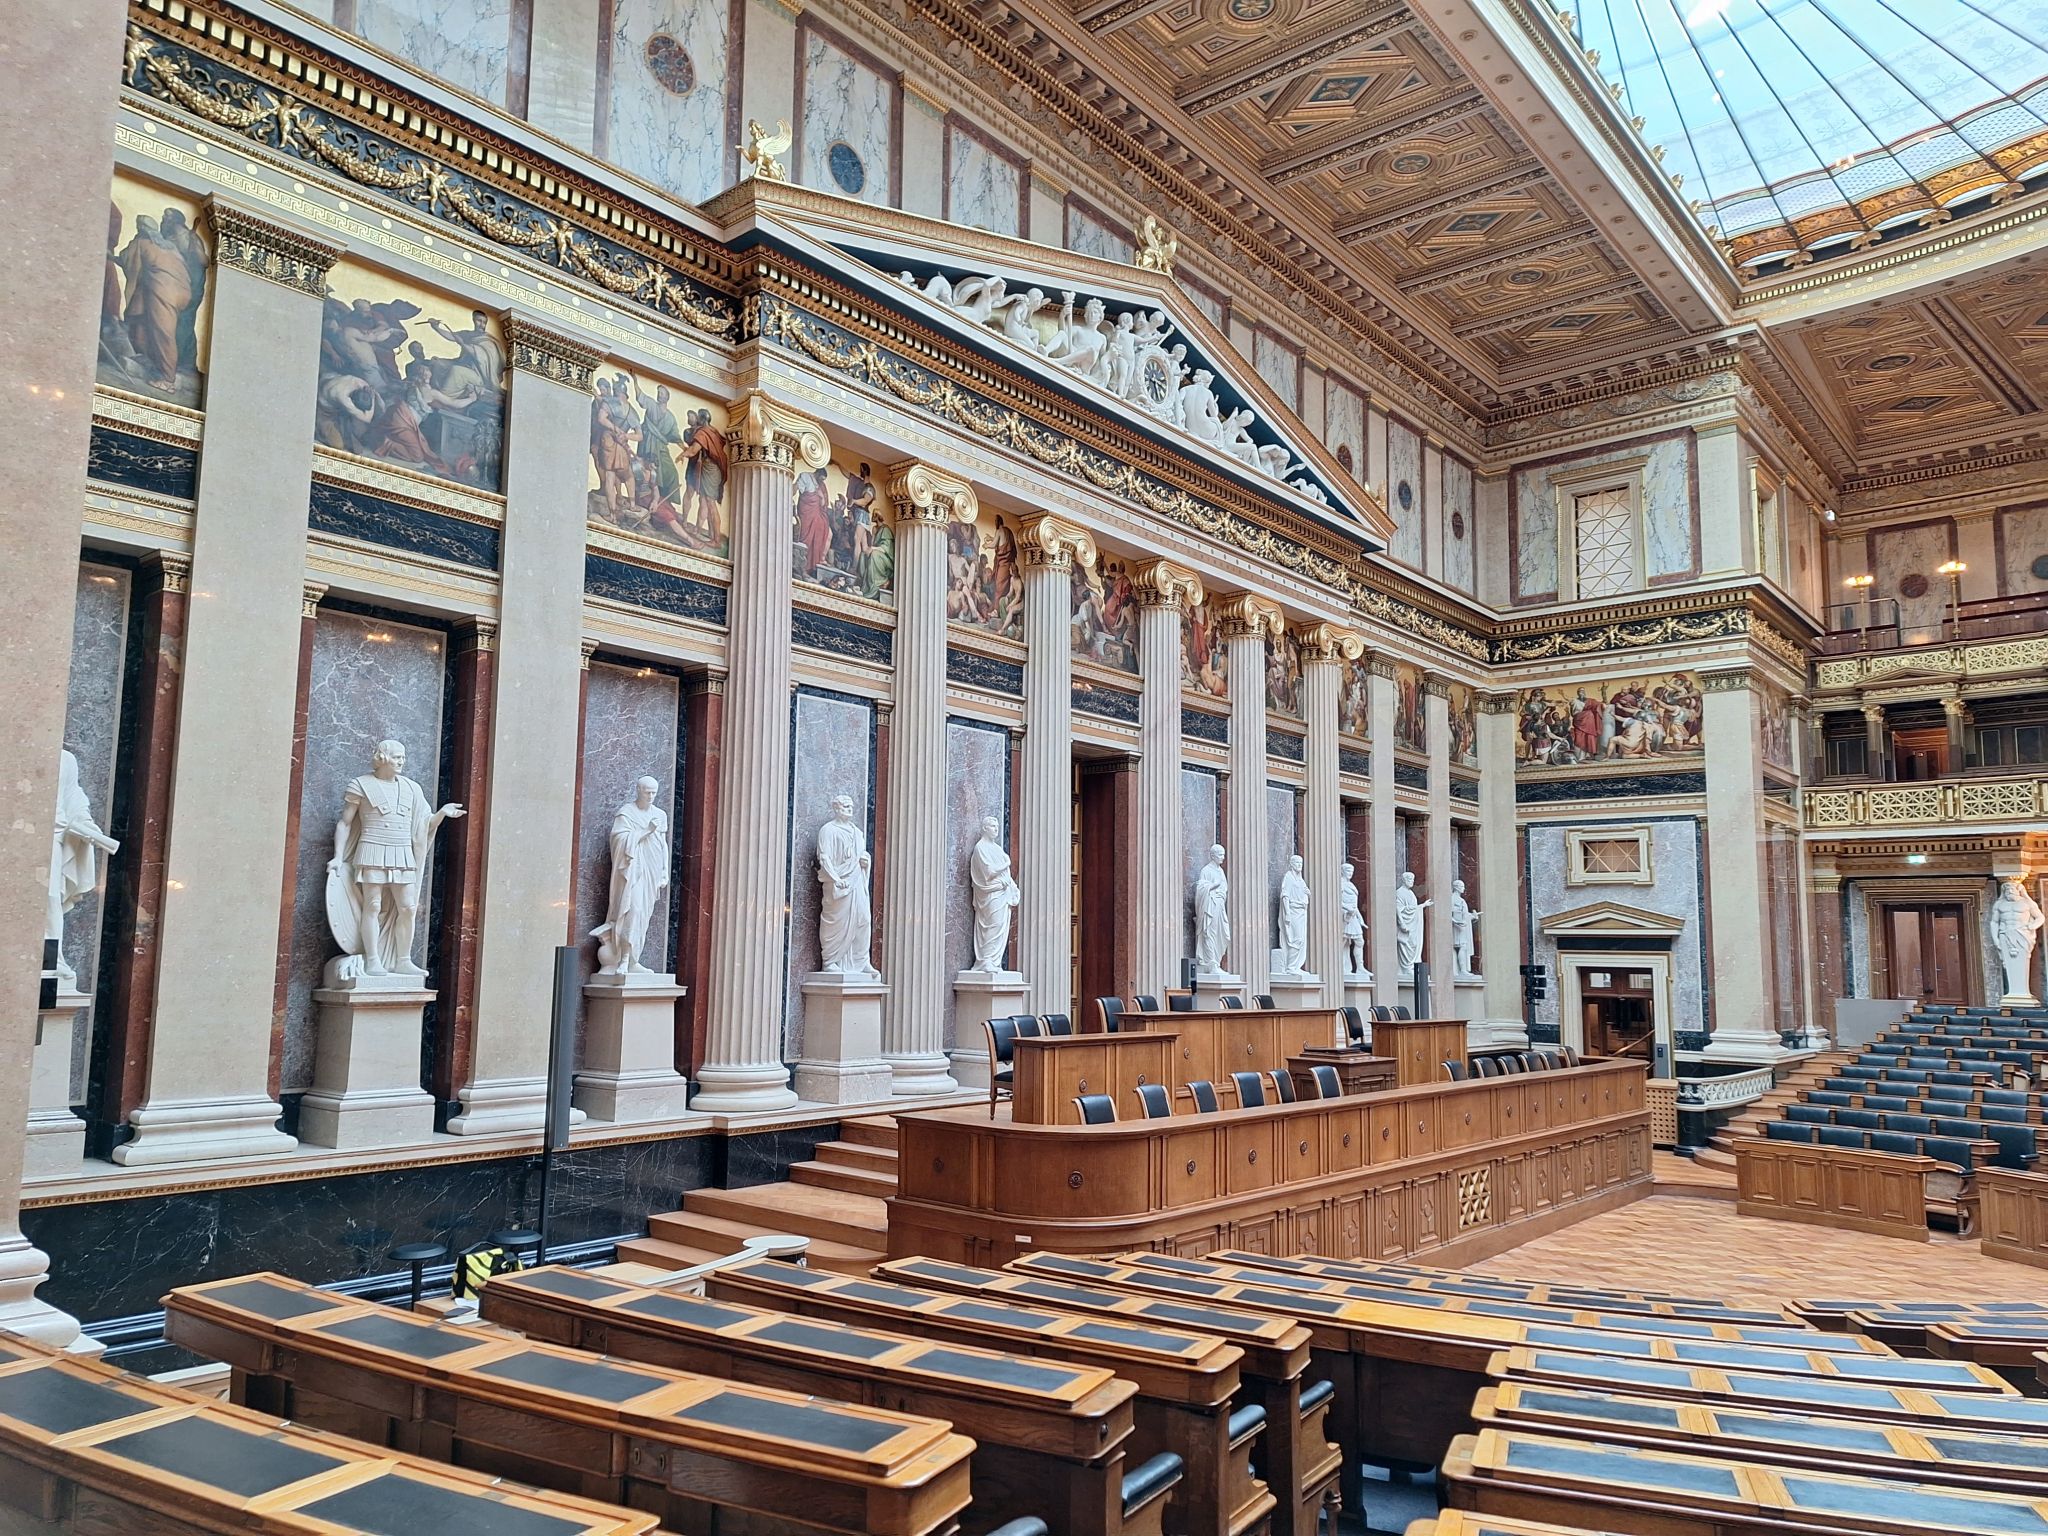 Inside the Parliament of Austria.